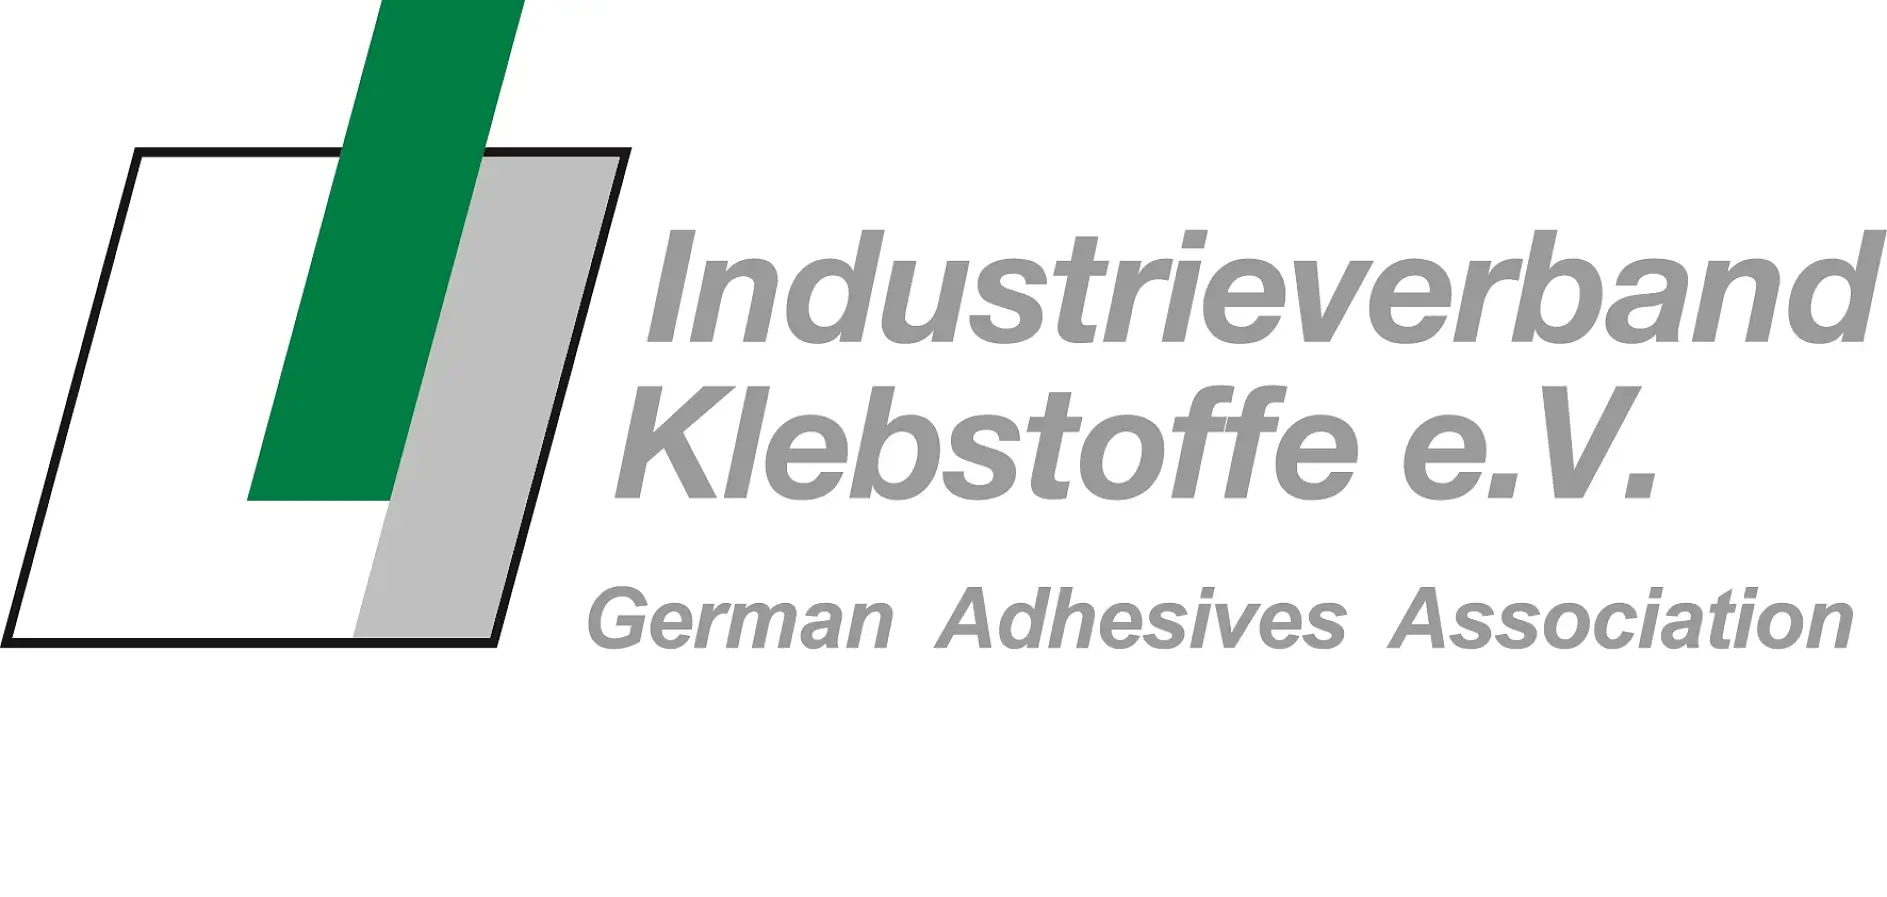 L’Associazione tedesca dell’industria degli adesivi è la più grande organizzazione nazionale nel settore della tecnologia del fissaggio mediante adesivi al mondo e, in considerazione del suo ampio portafoglio di servizi, è anche leader mondiale.